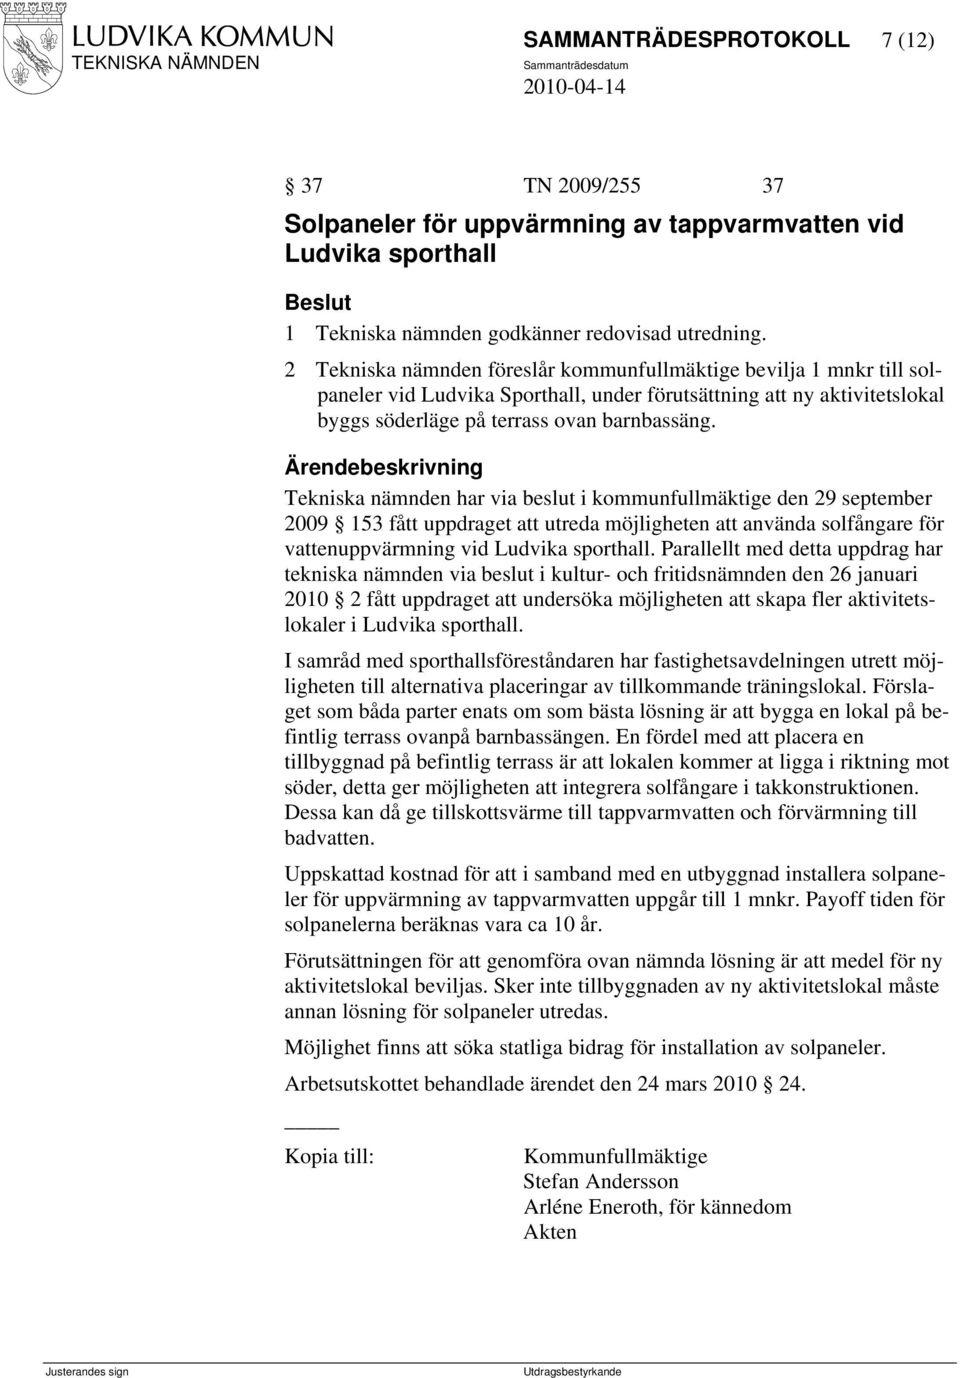 Tekniska nämnden har via beslut i kommunfullmäktige den 29 september 2009 153 fått uppdraget att utreda möjligheten att använda solfångare för vattenuppvärmning vid Ludvika sporthall.